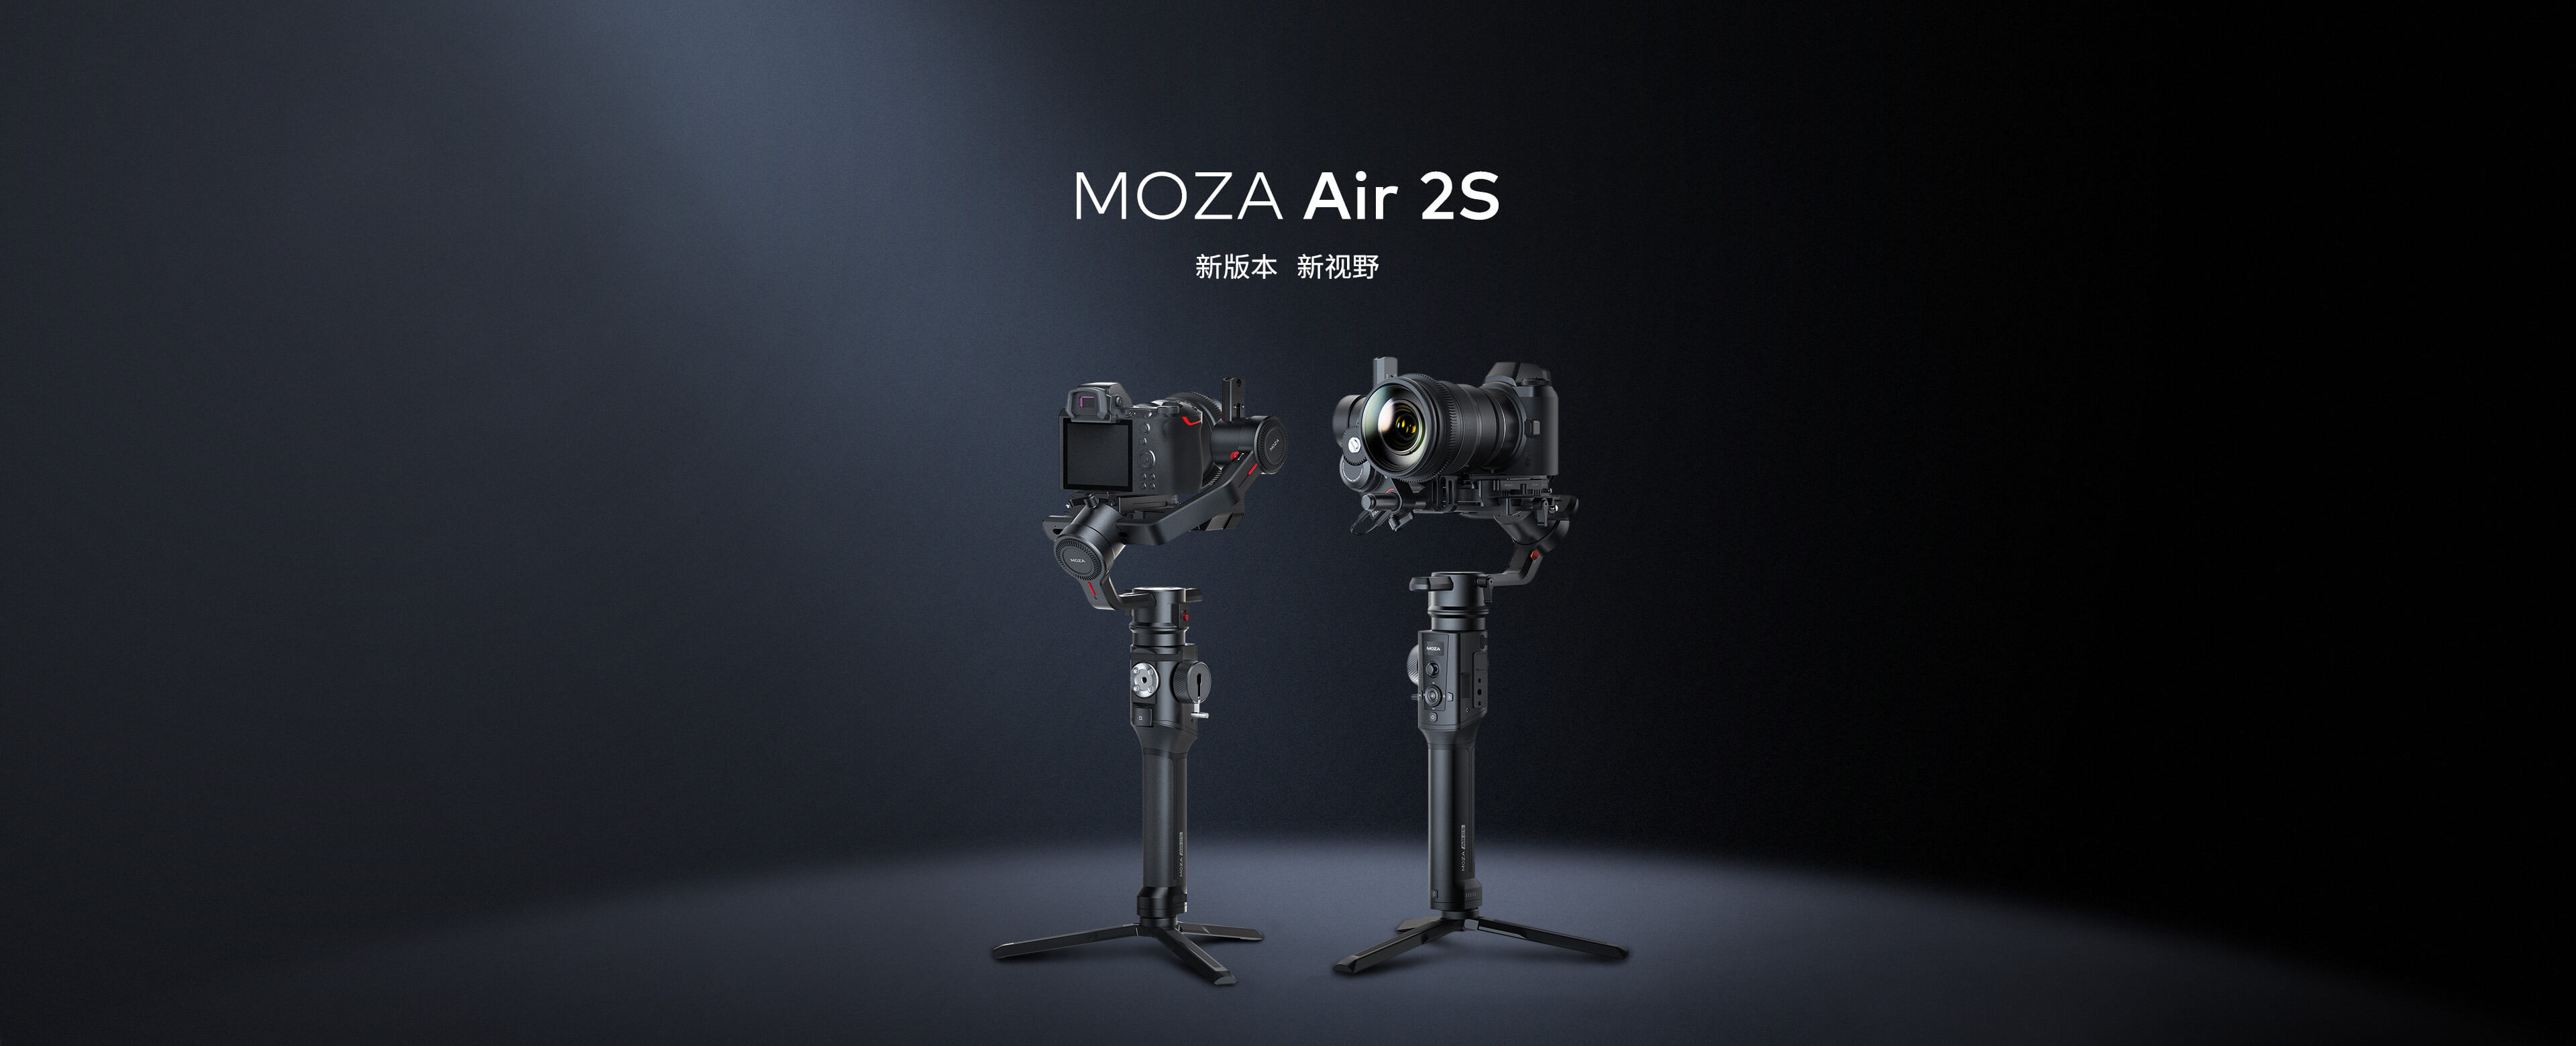 MOZA Air 2S